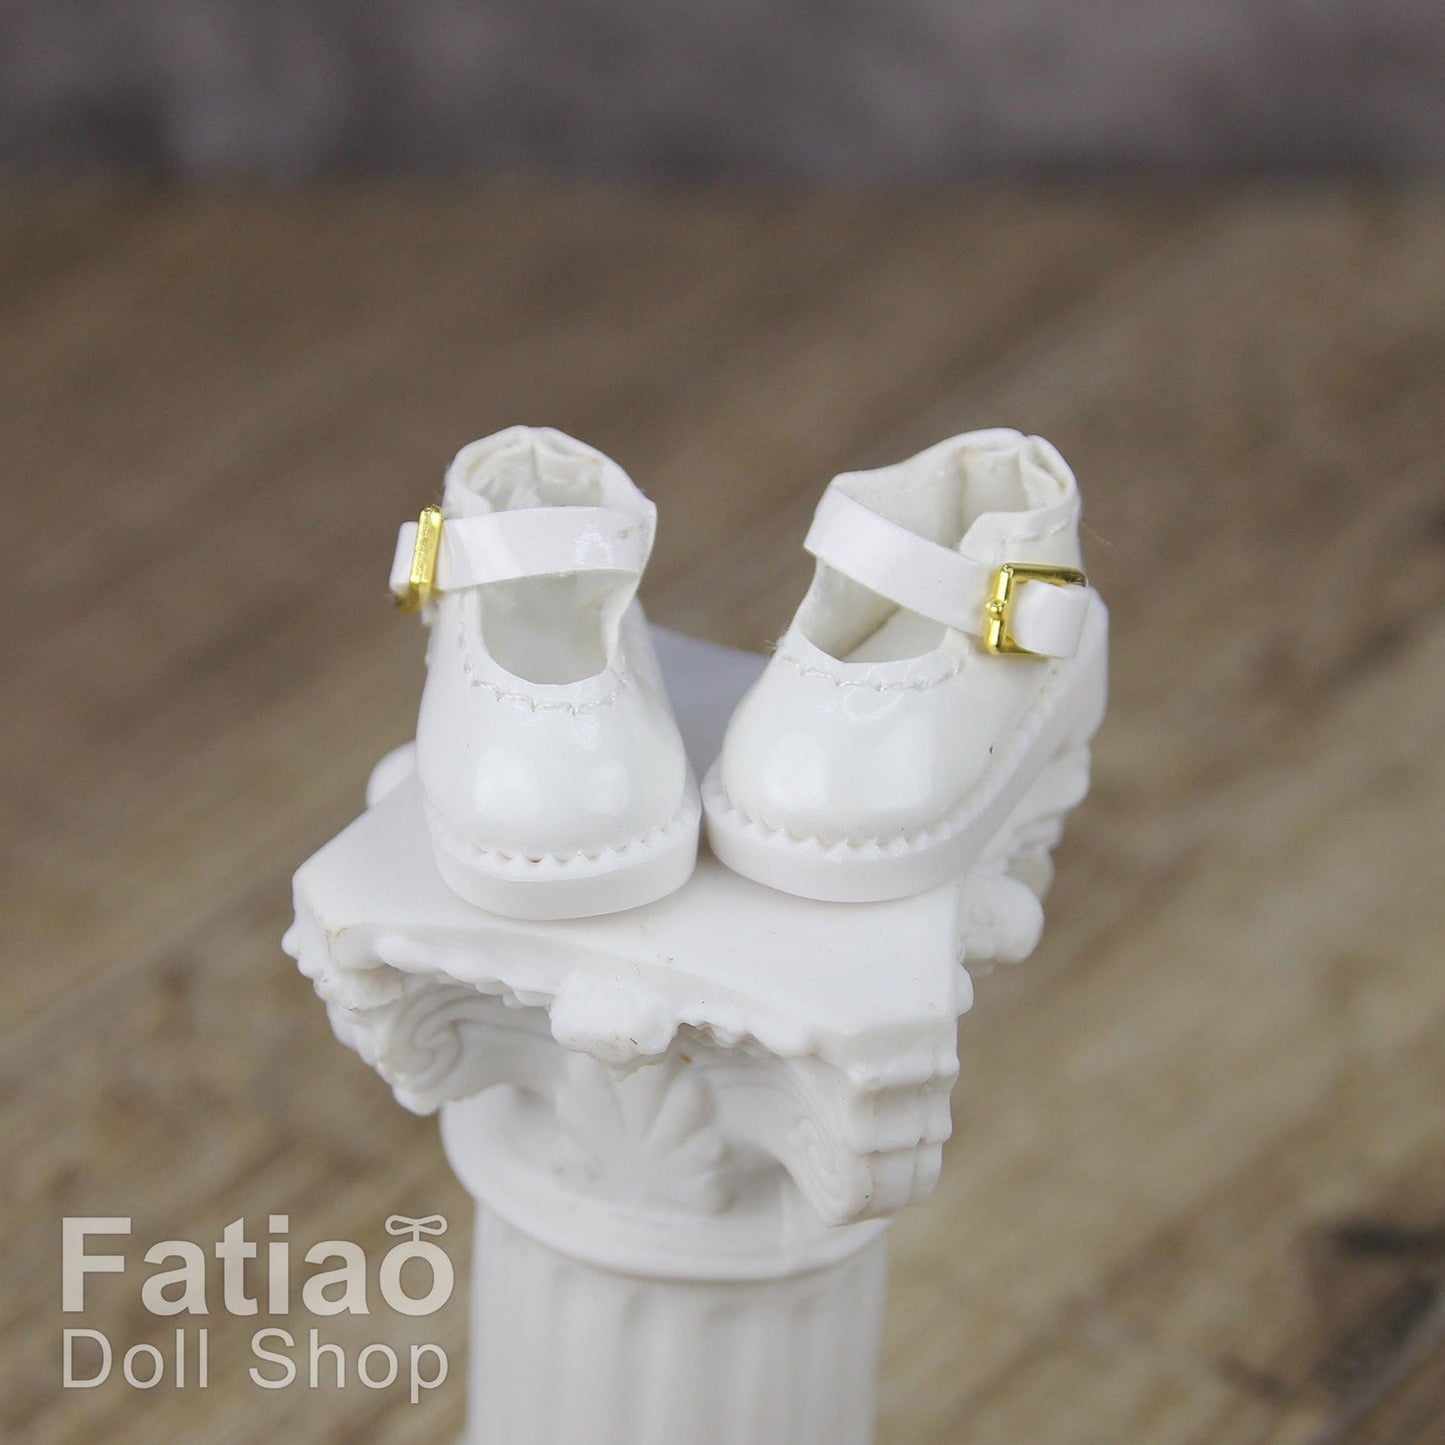 【Fatiao Doll Shop】圓頭皮鞋 圓頭瑪莉珍 / OB11 iMda 1.7